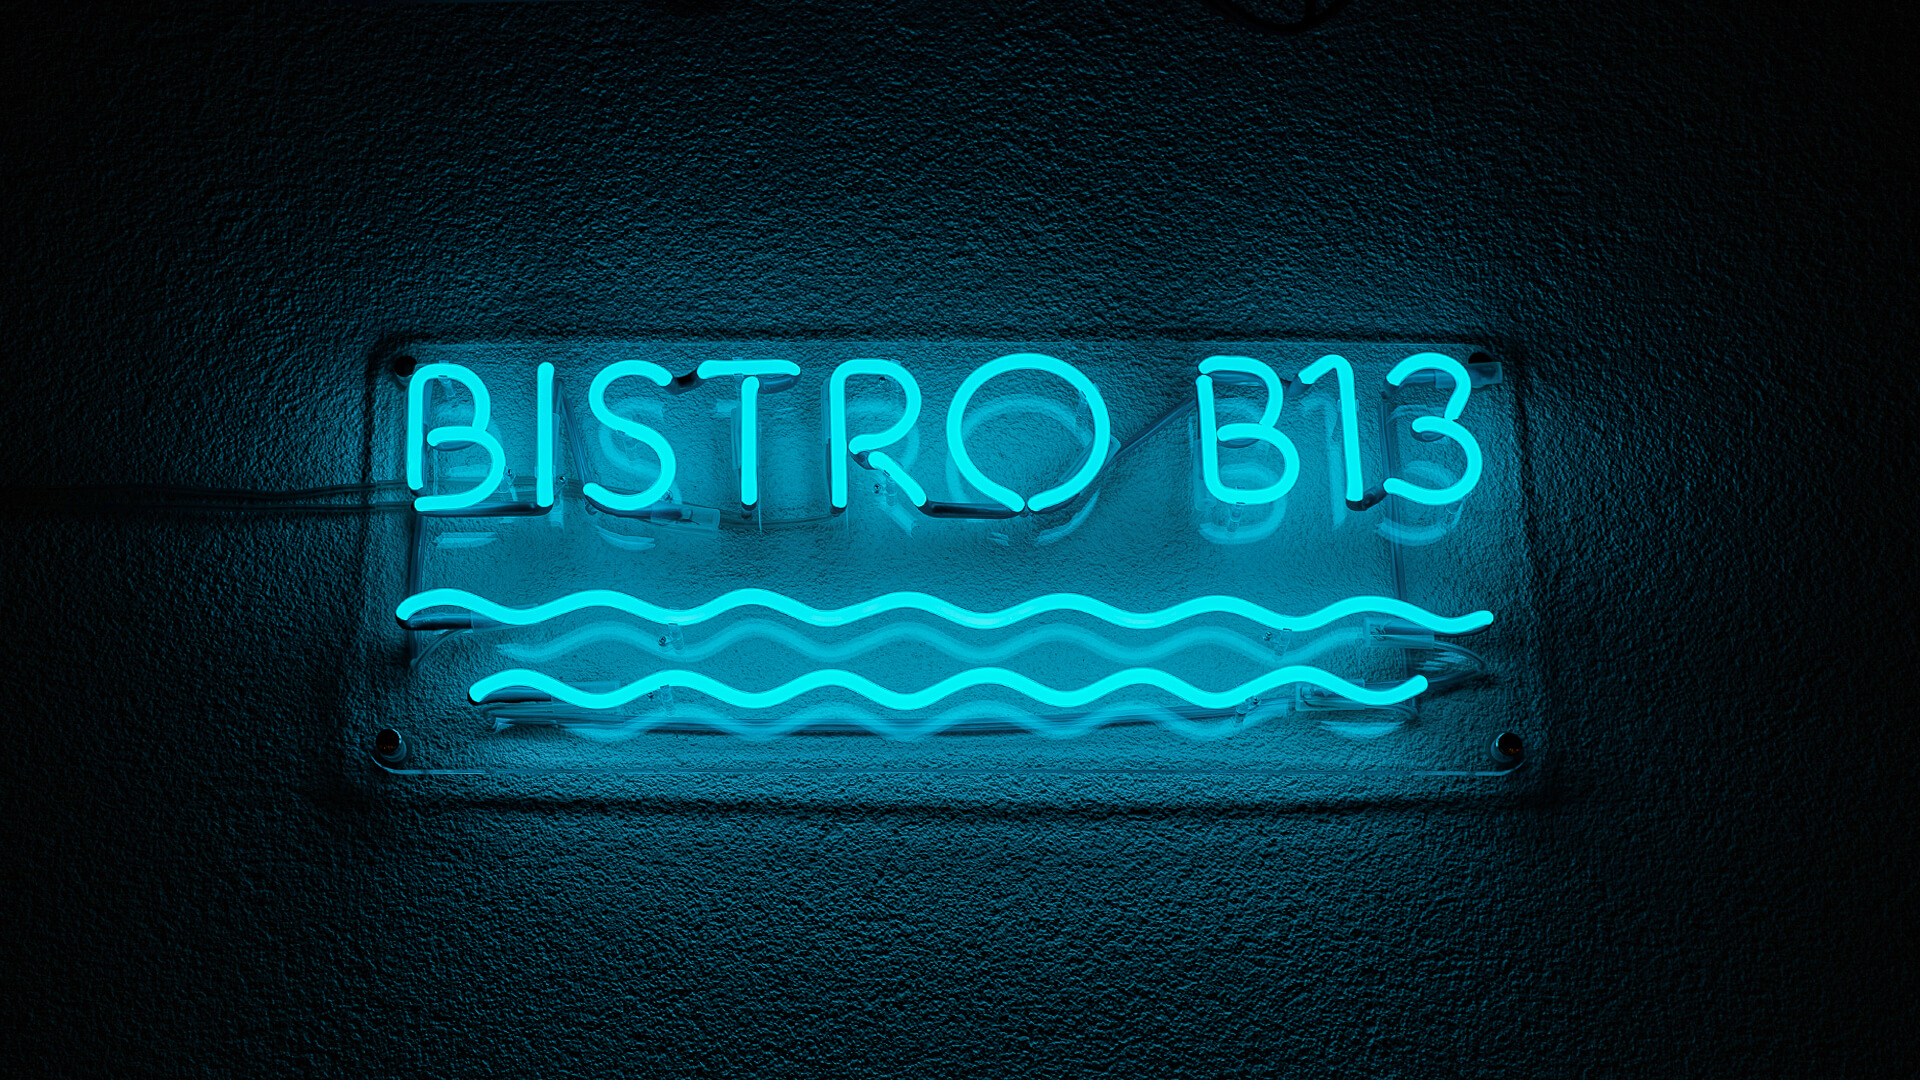 Niebieski neon Bistro, z falami pod napisem.